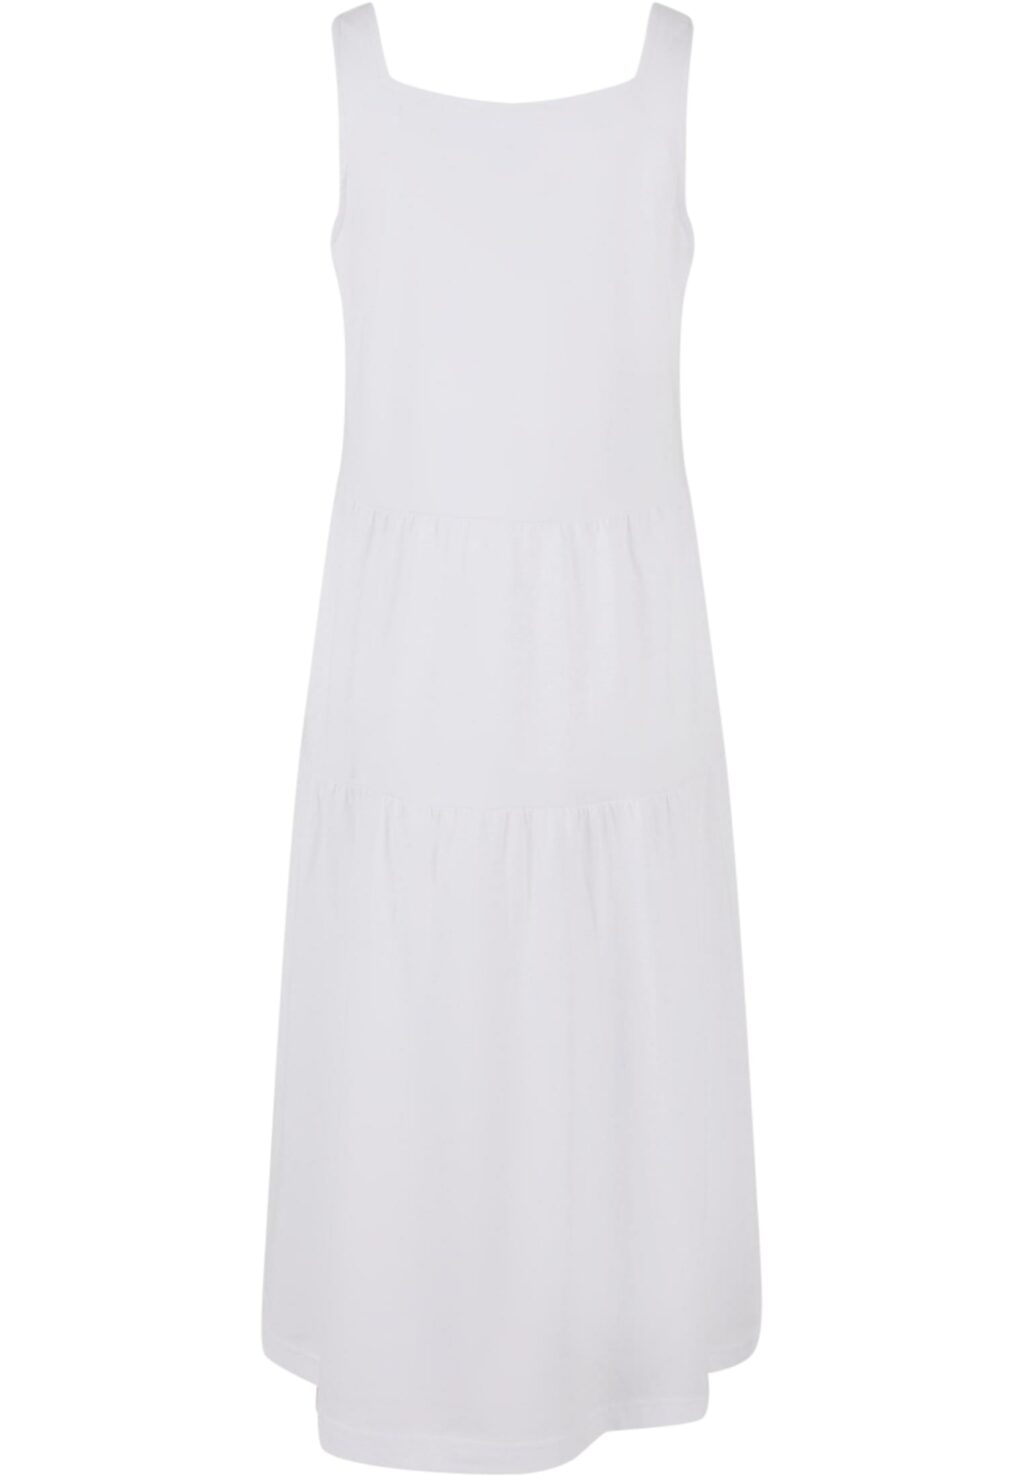 Girls 7/8 Length Valance Summer Dress white UCK4784